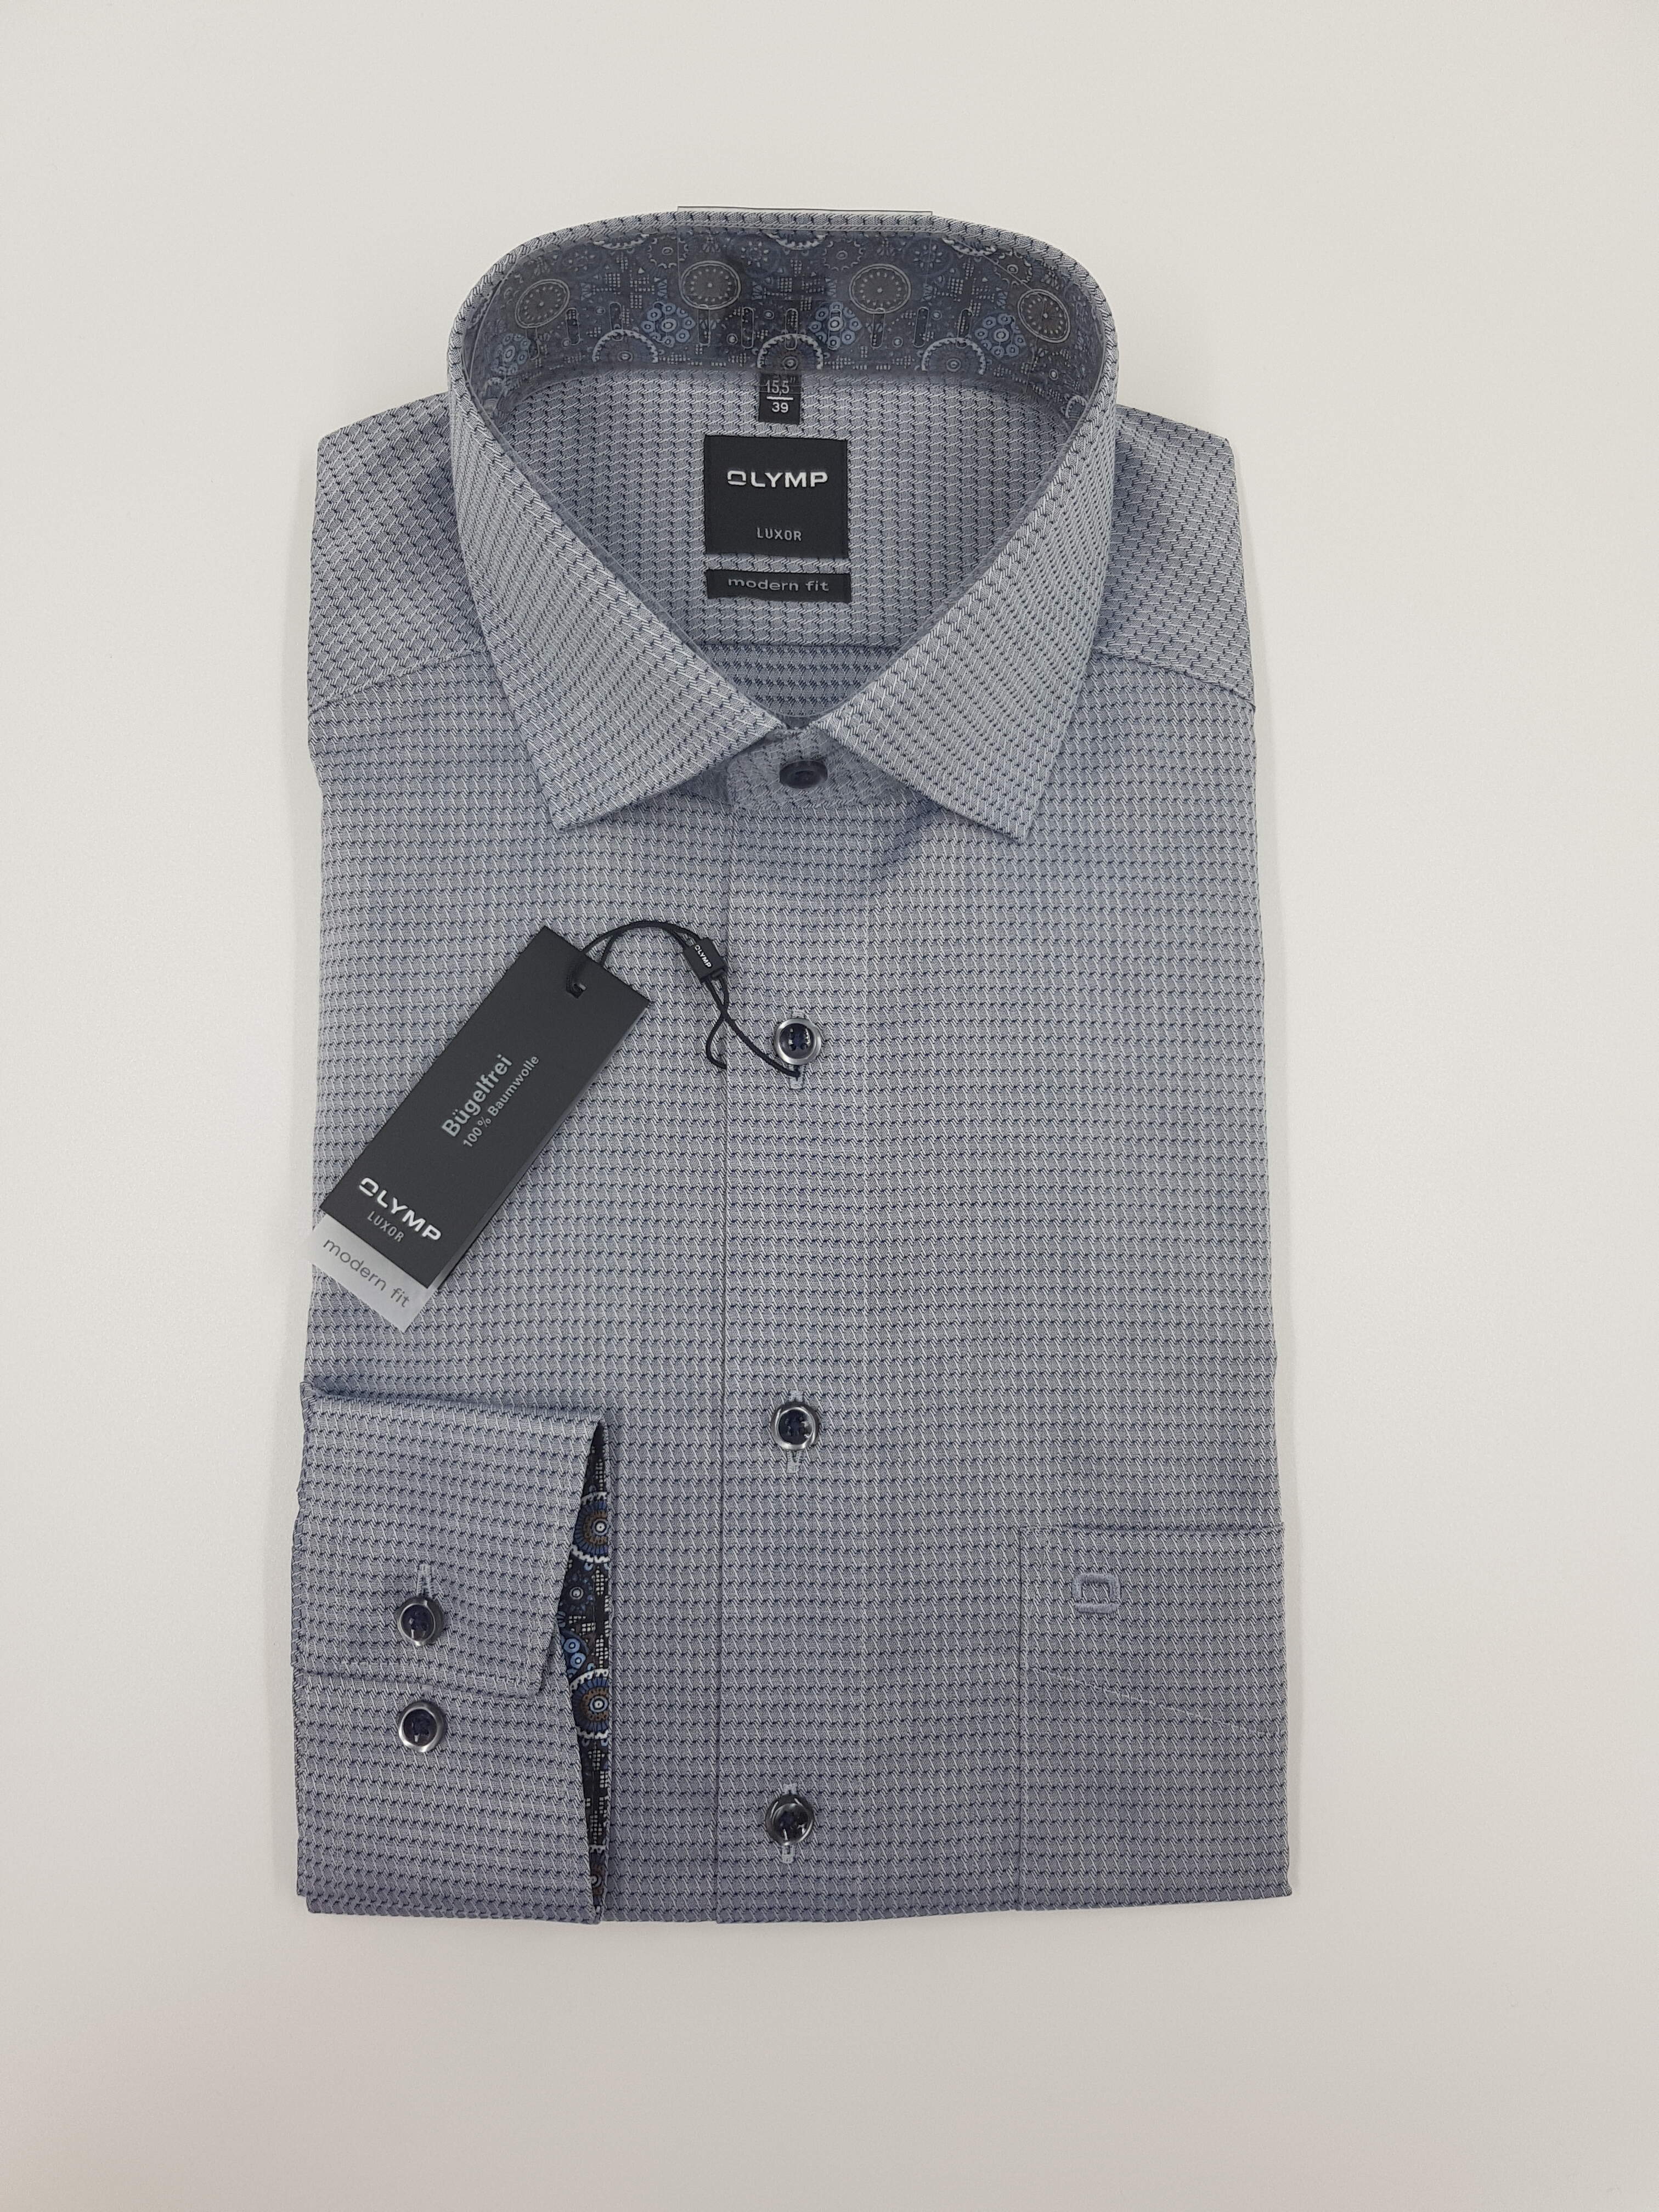 OLYMP Luxor Hemd modern fit blau Bügelfrei 100 % Baumwolle Verschiedene Größen